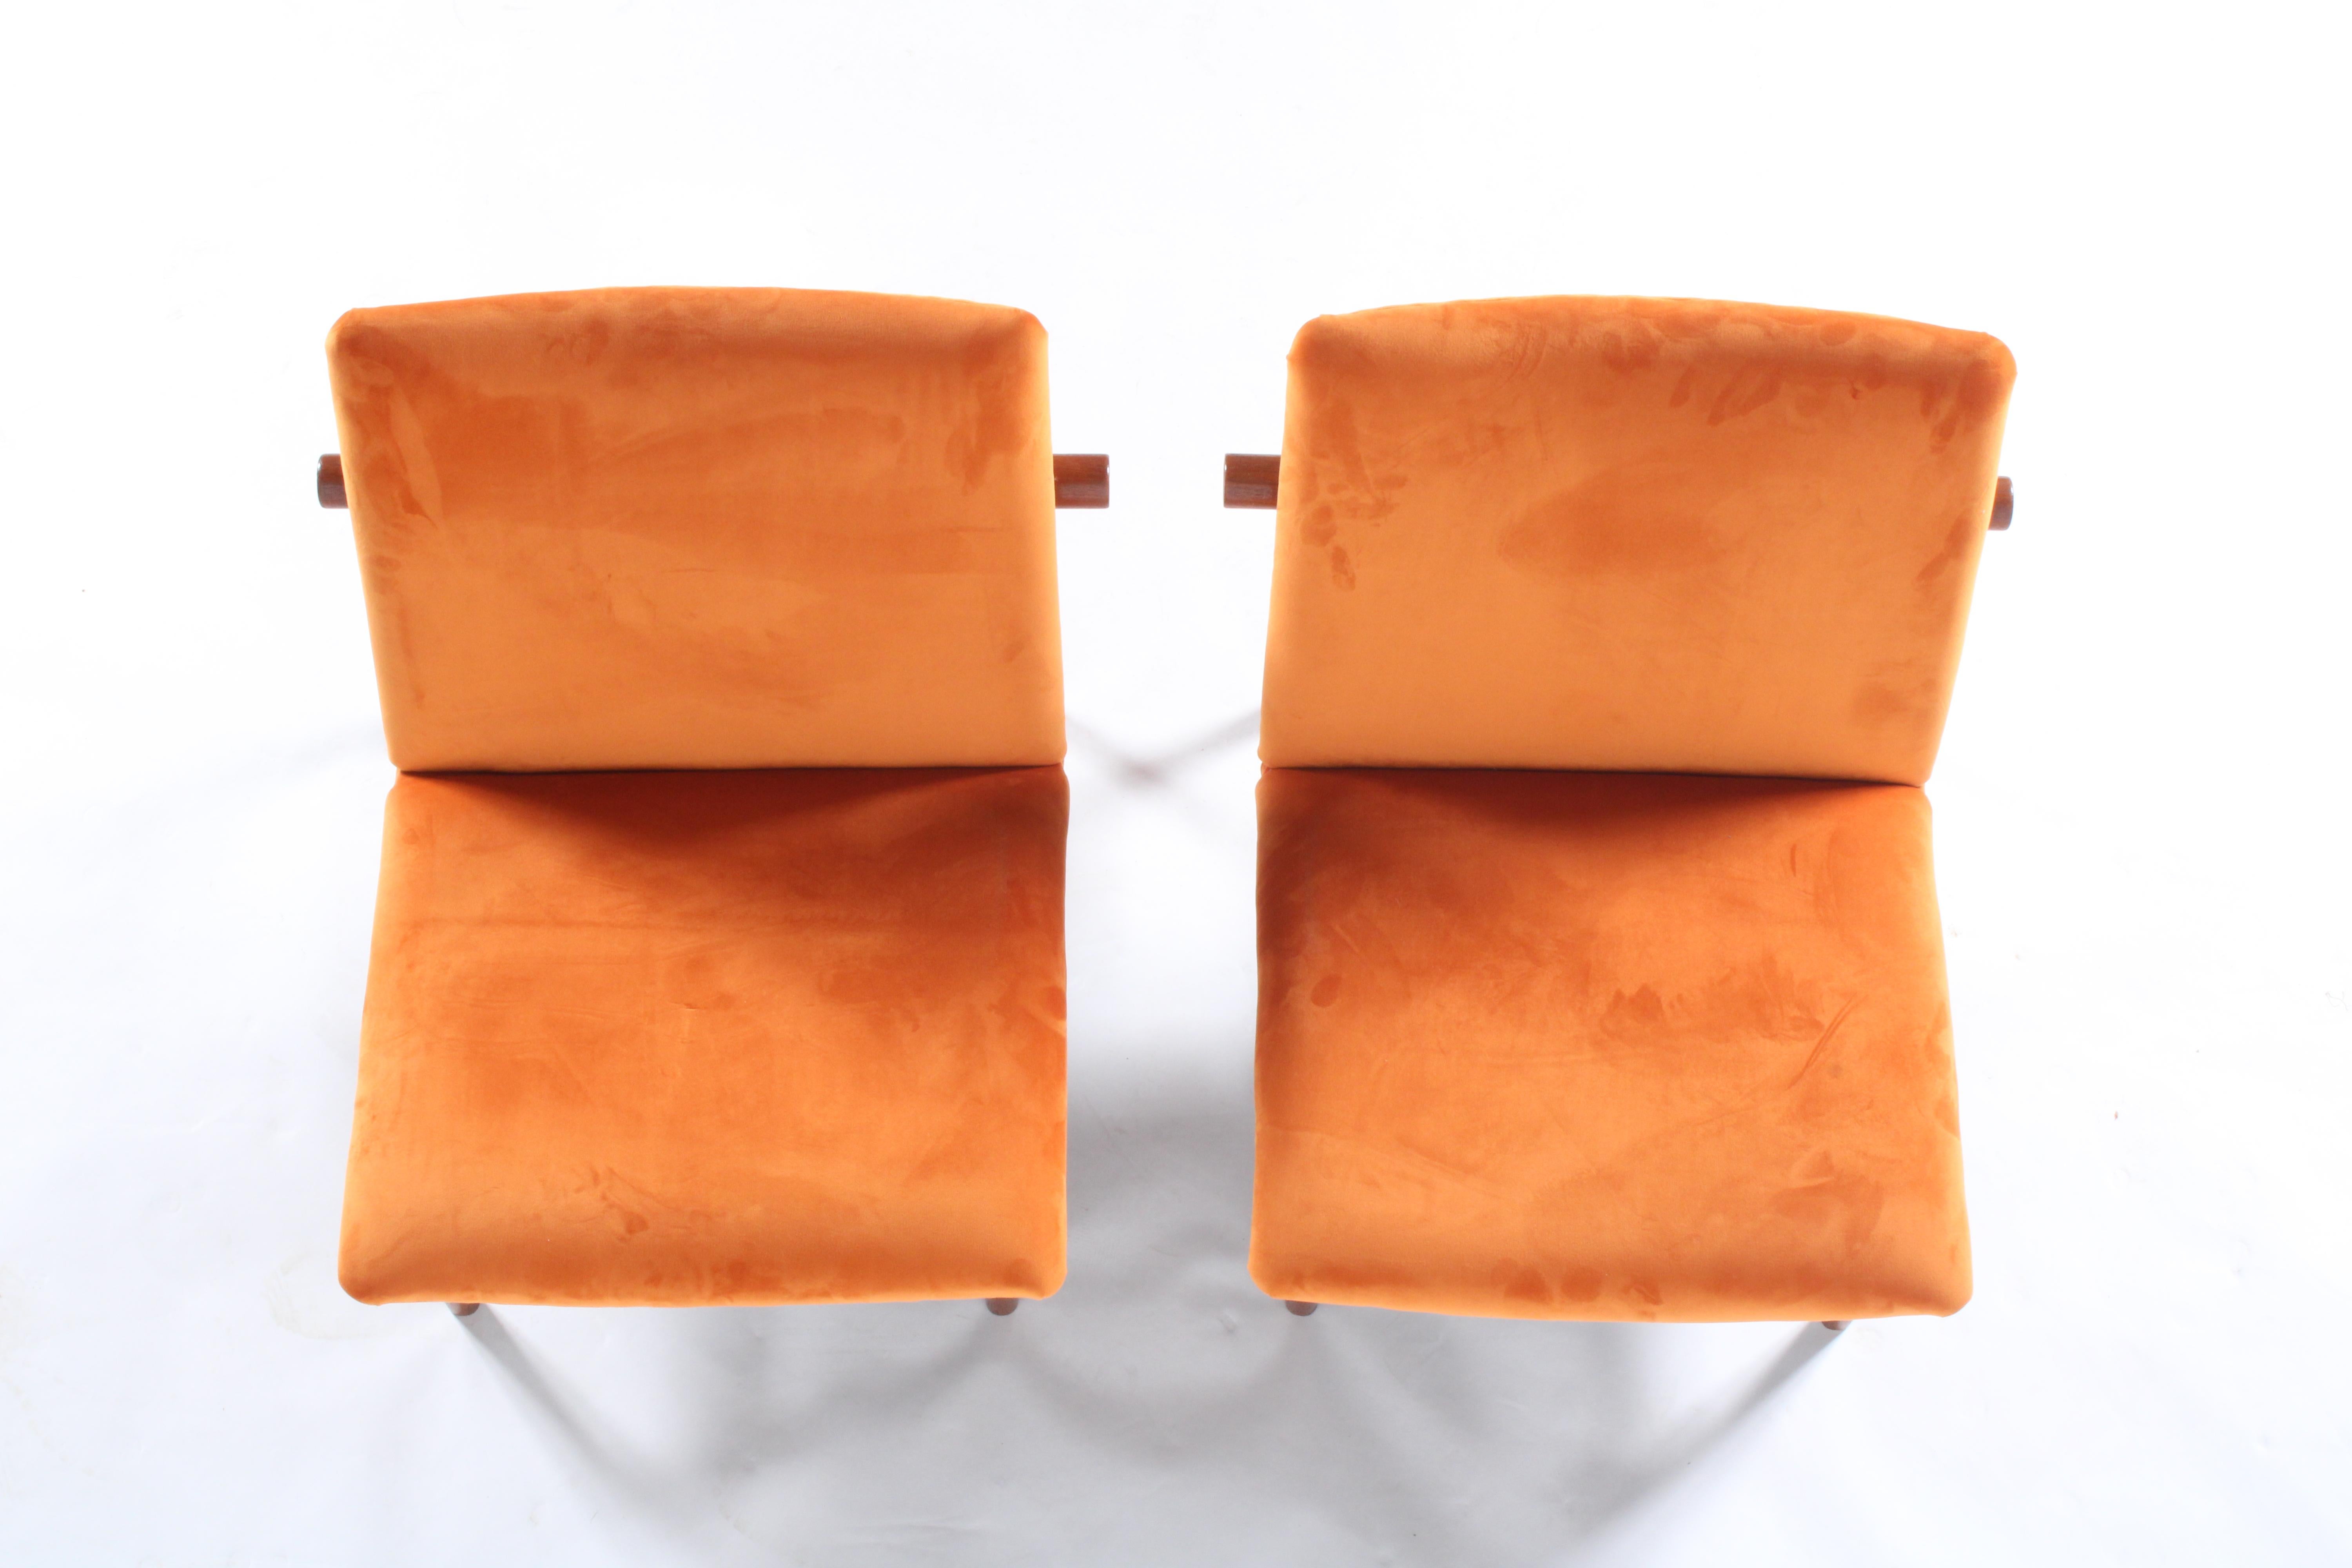 Mid-Century Modern Pair of Iconic Danish Design Japan Chairs by Finn Juhl for France & Daverkosen